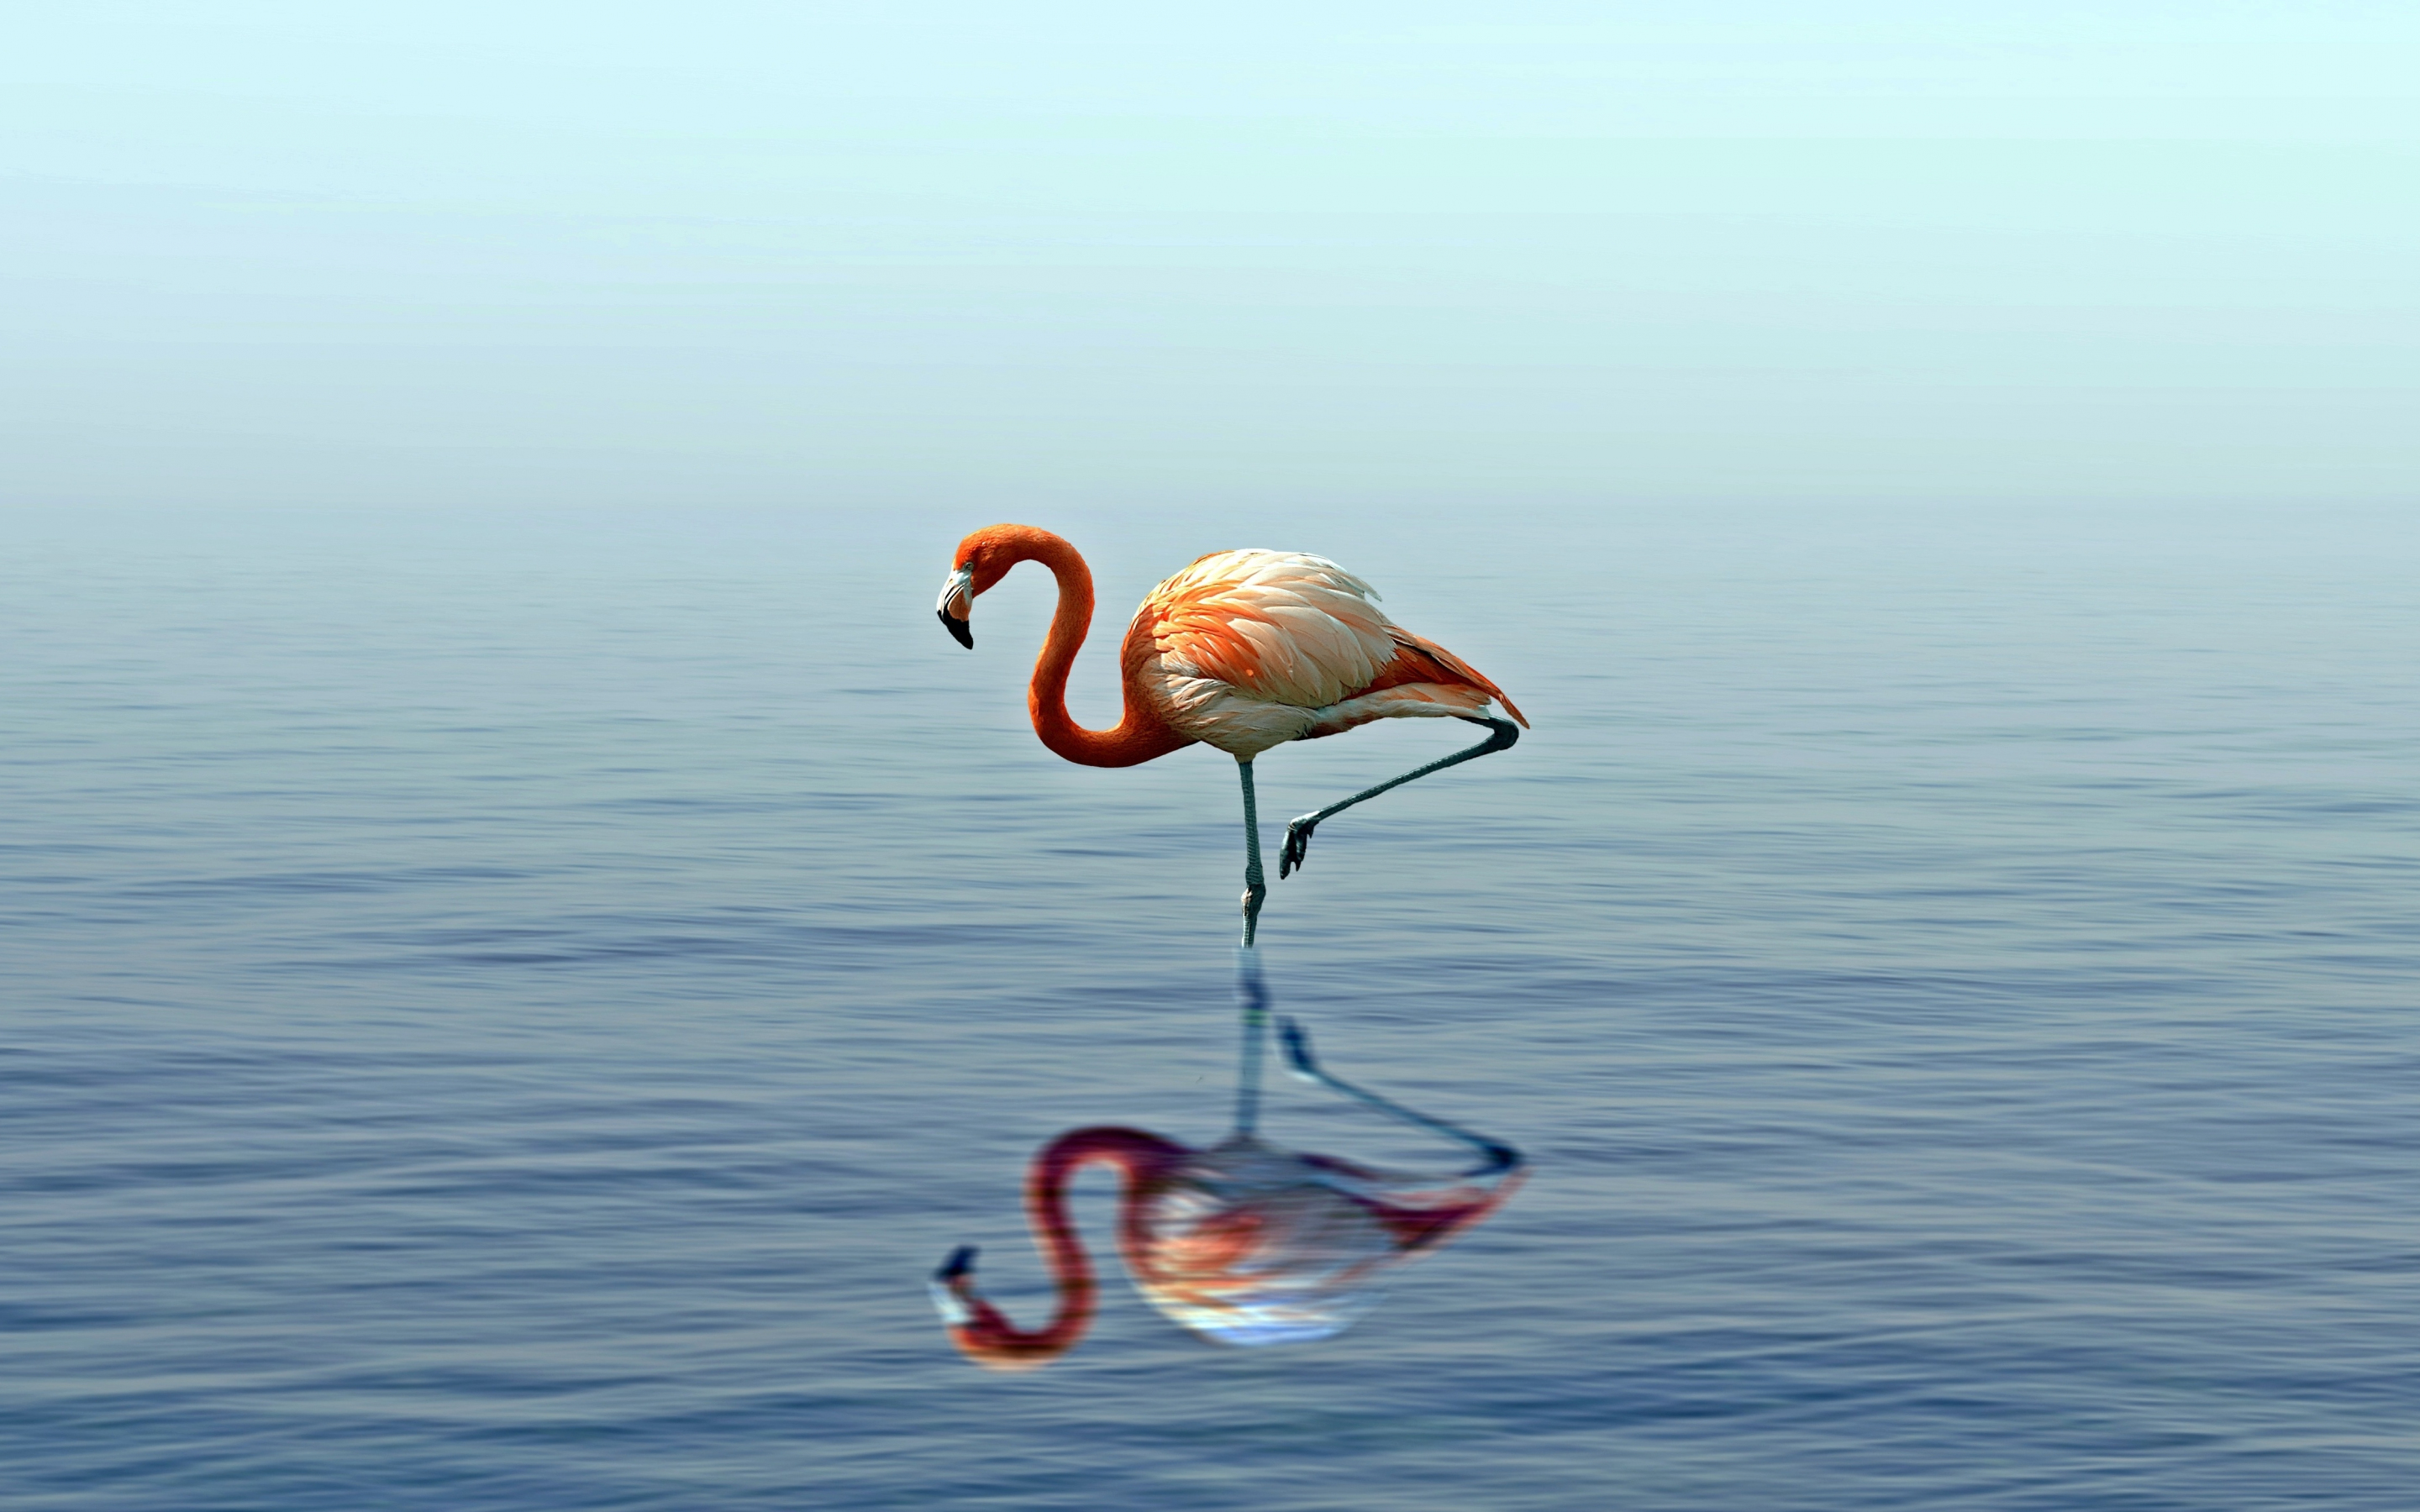 Flamingo, reflection, lake, 2880x1800 wallpaper